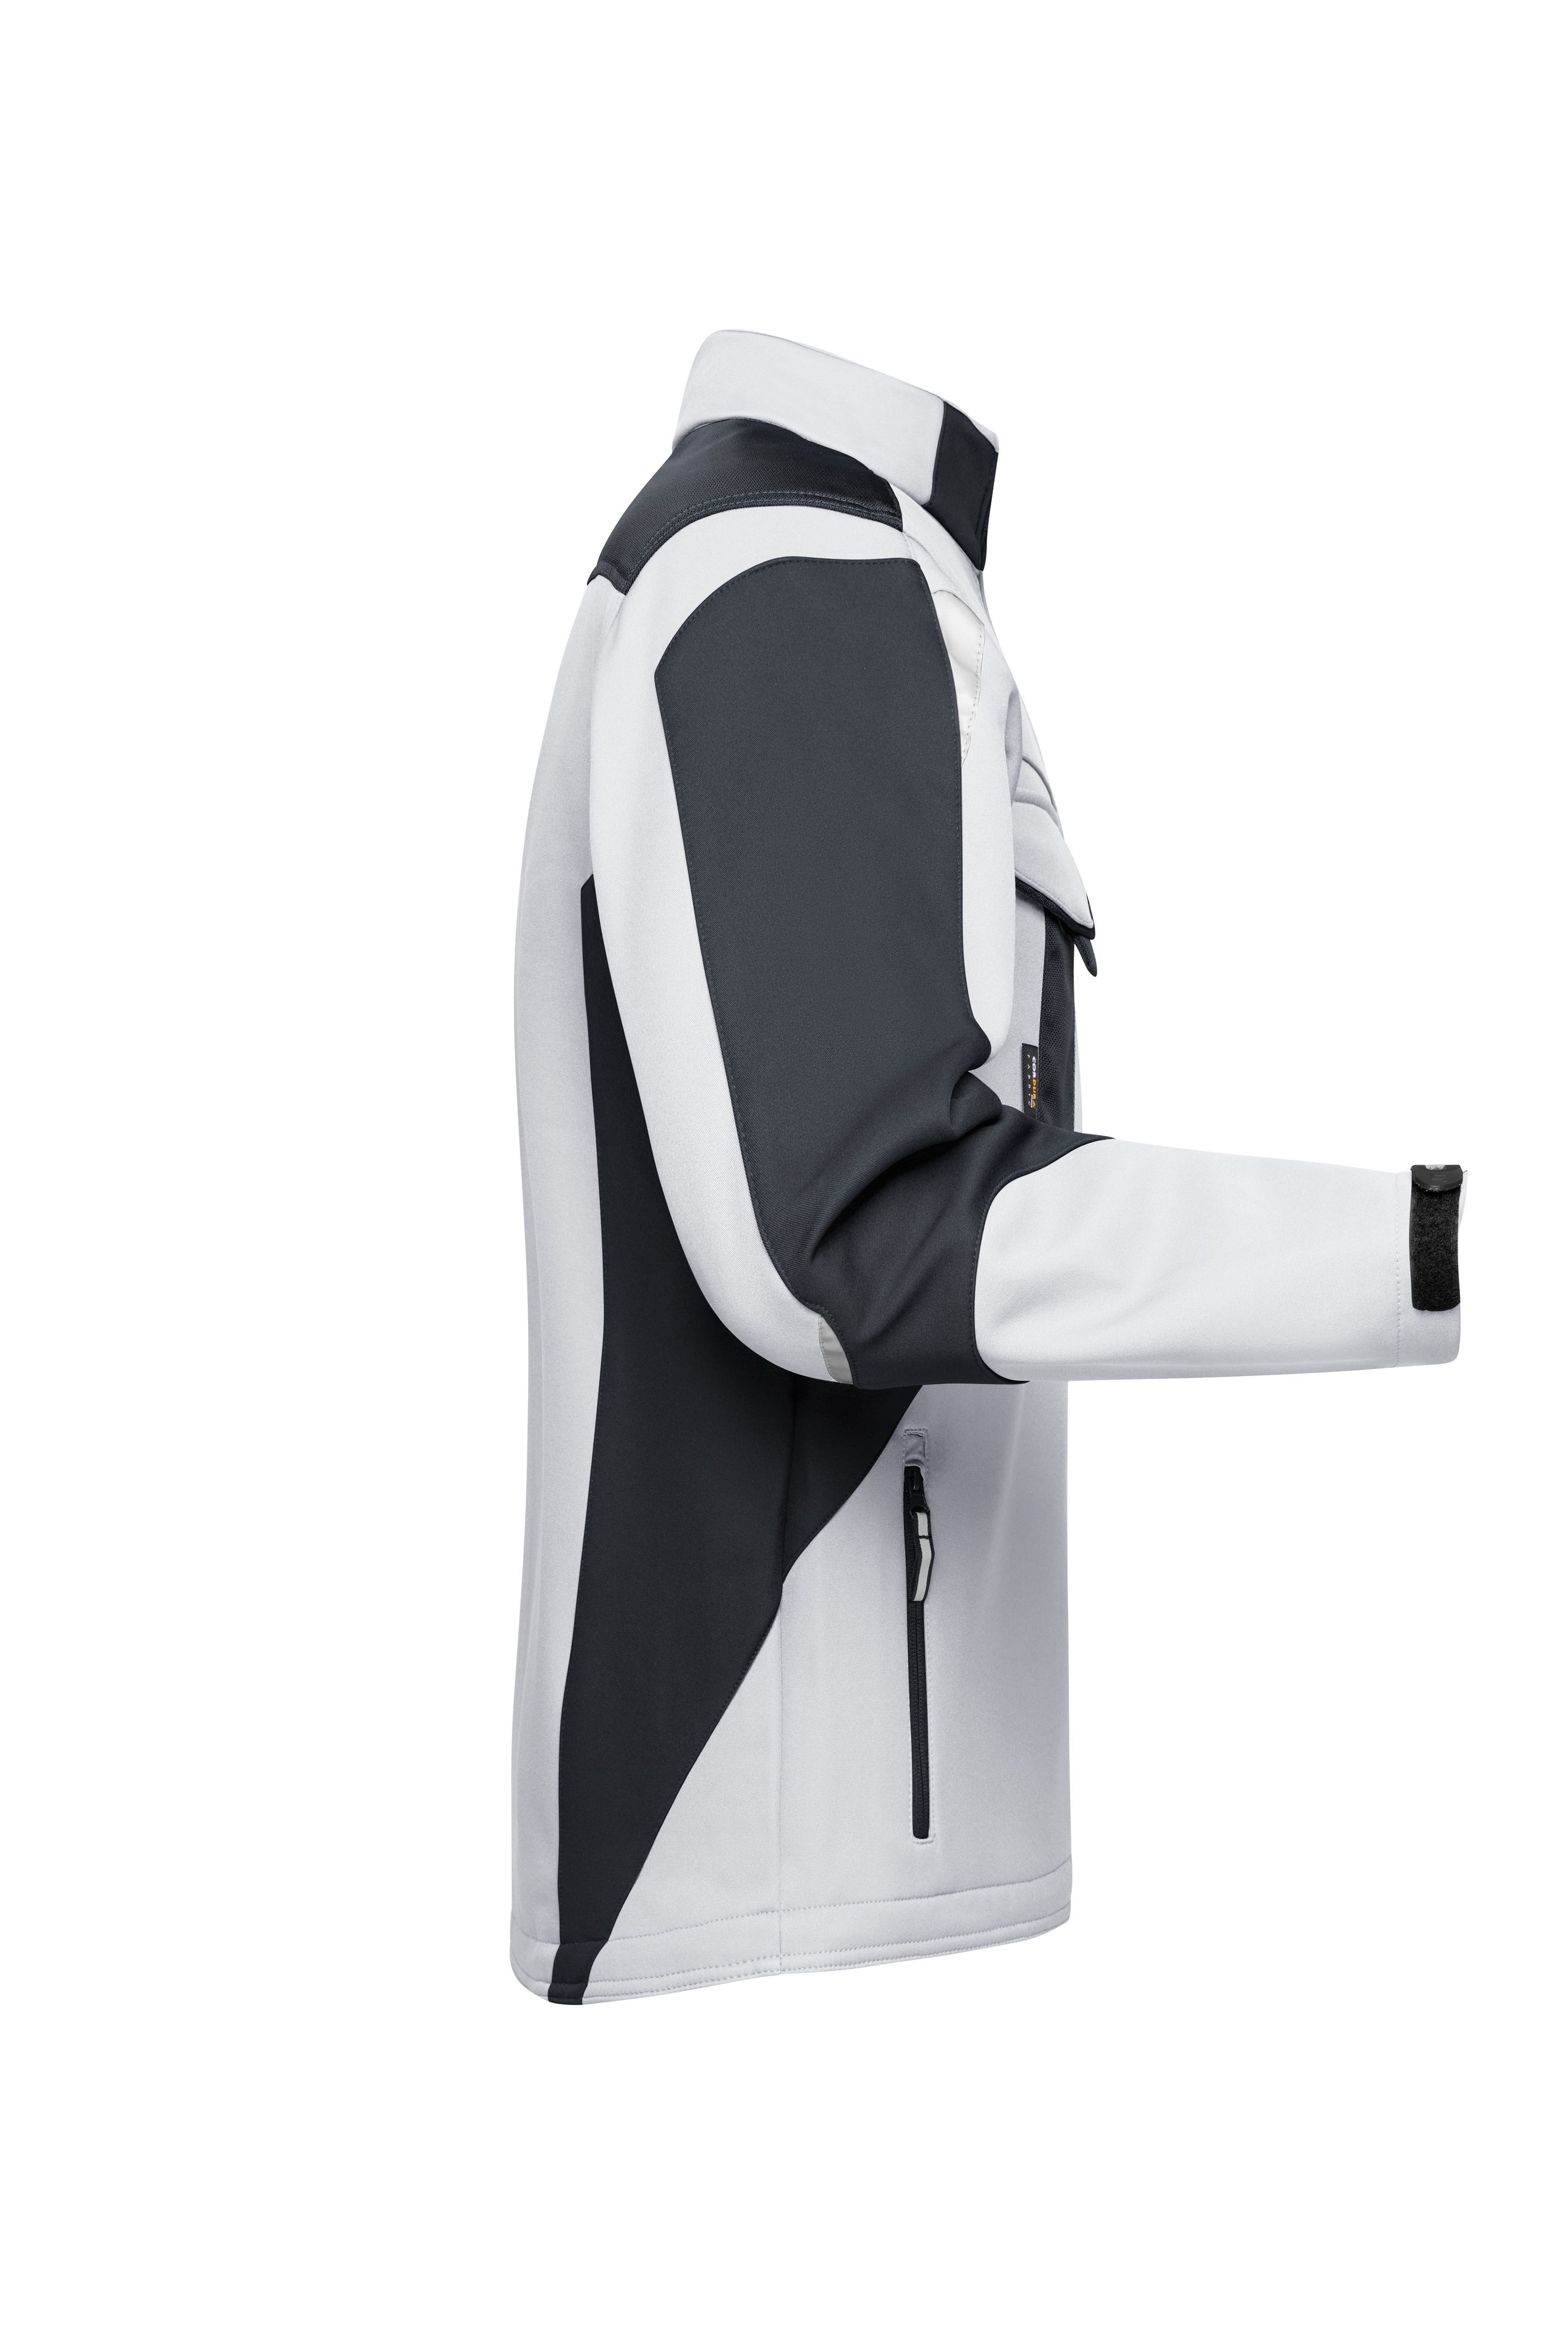 Workwear Softshell Jacket - STRONG - JN844 Professionelle Softshelljacke mit hochwertiger Ausstattung